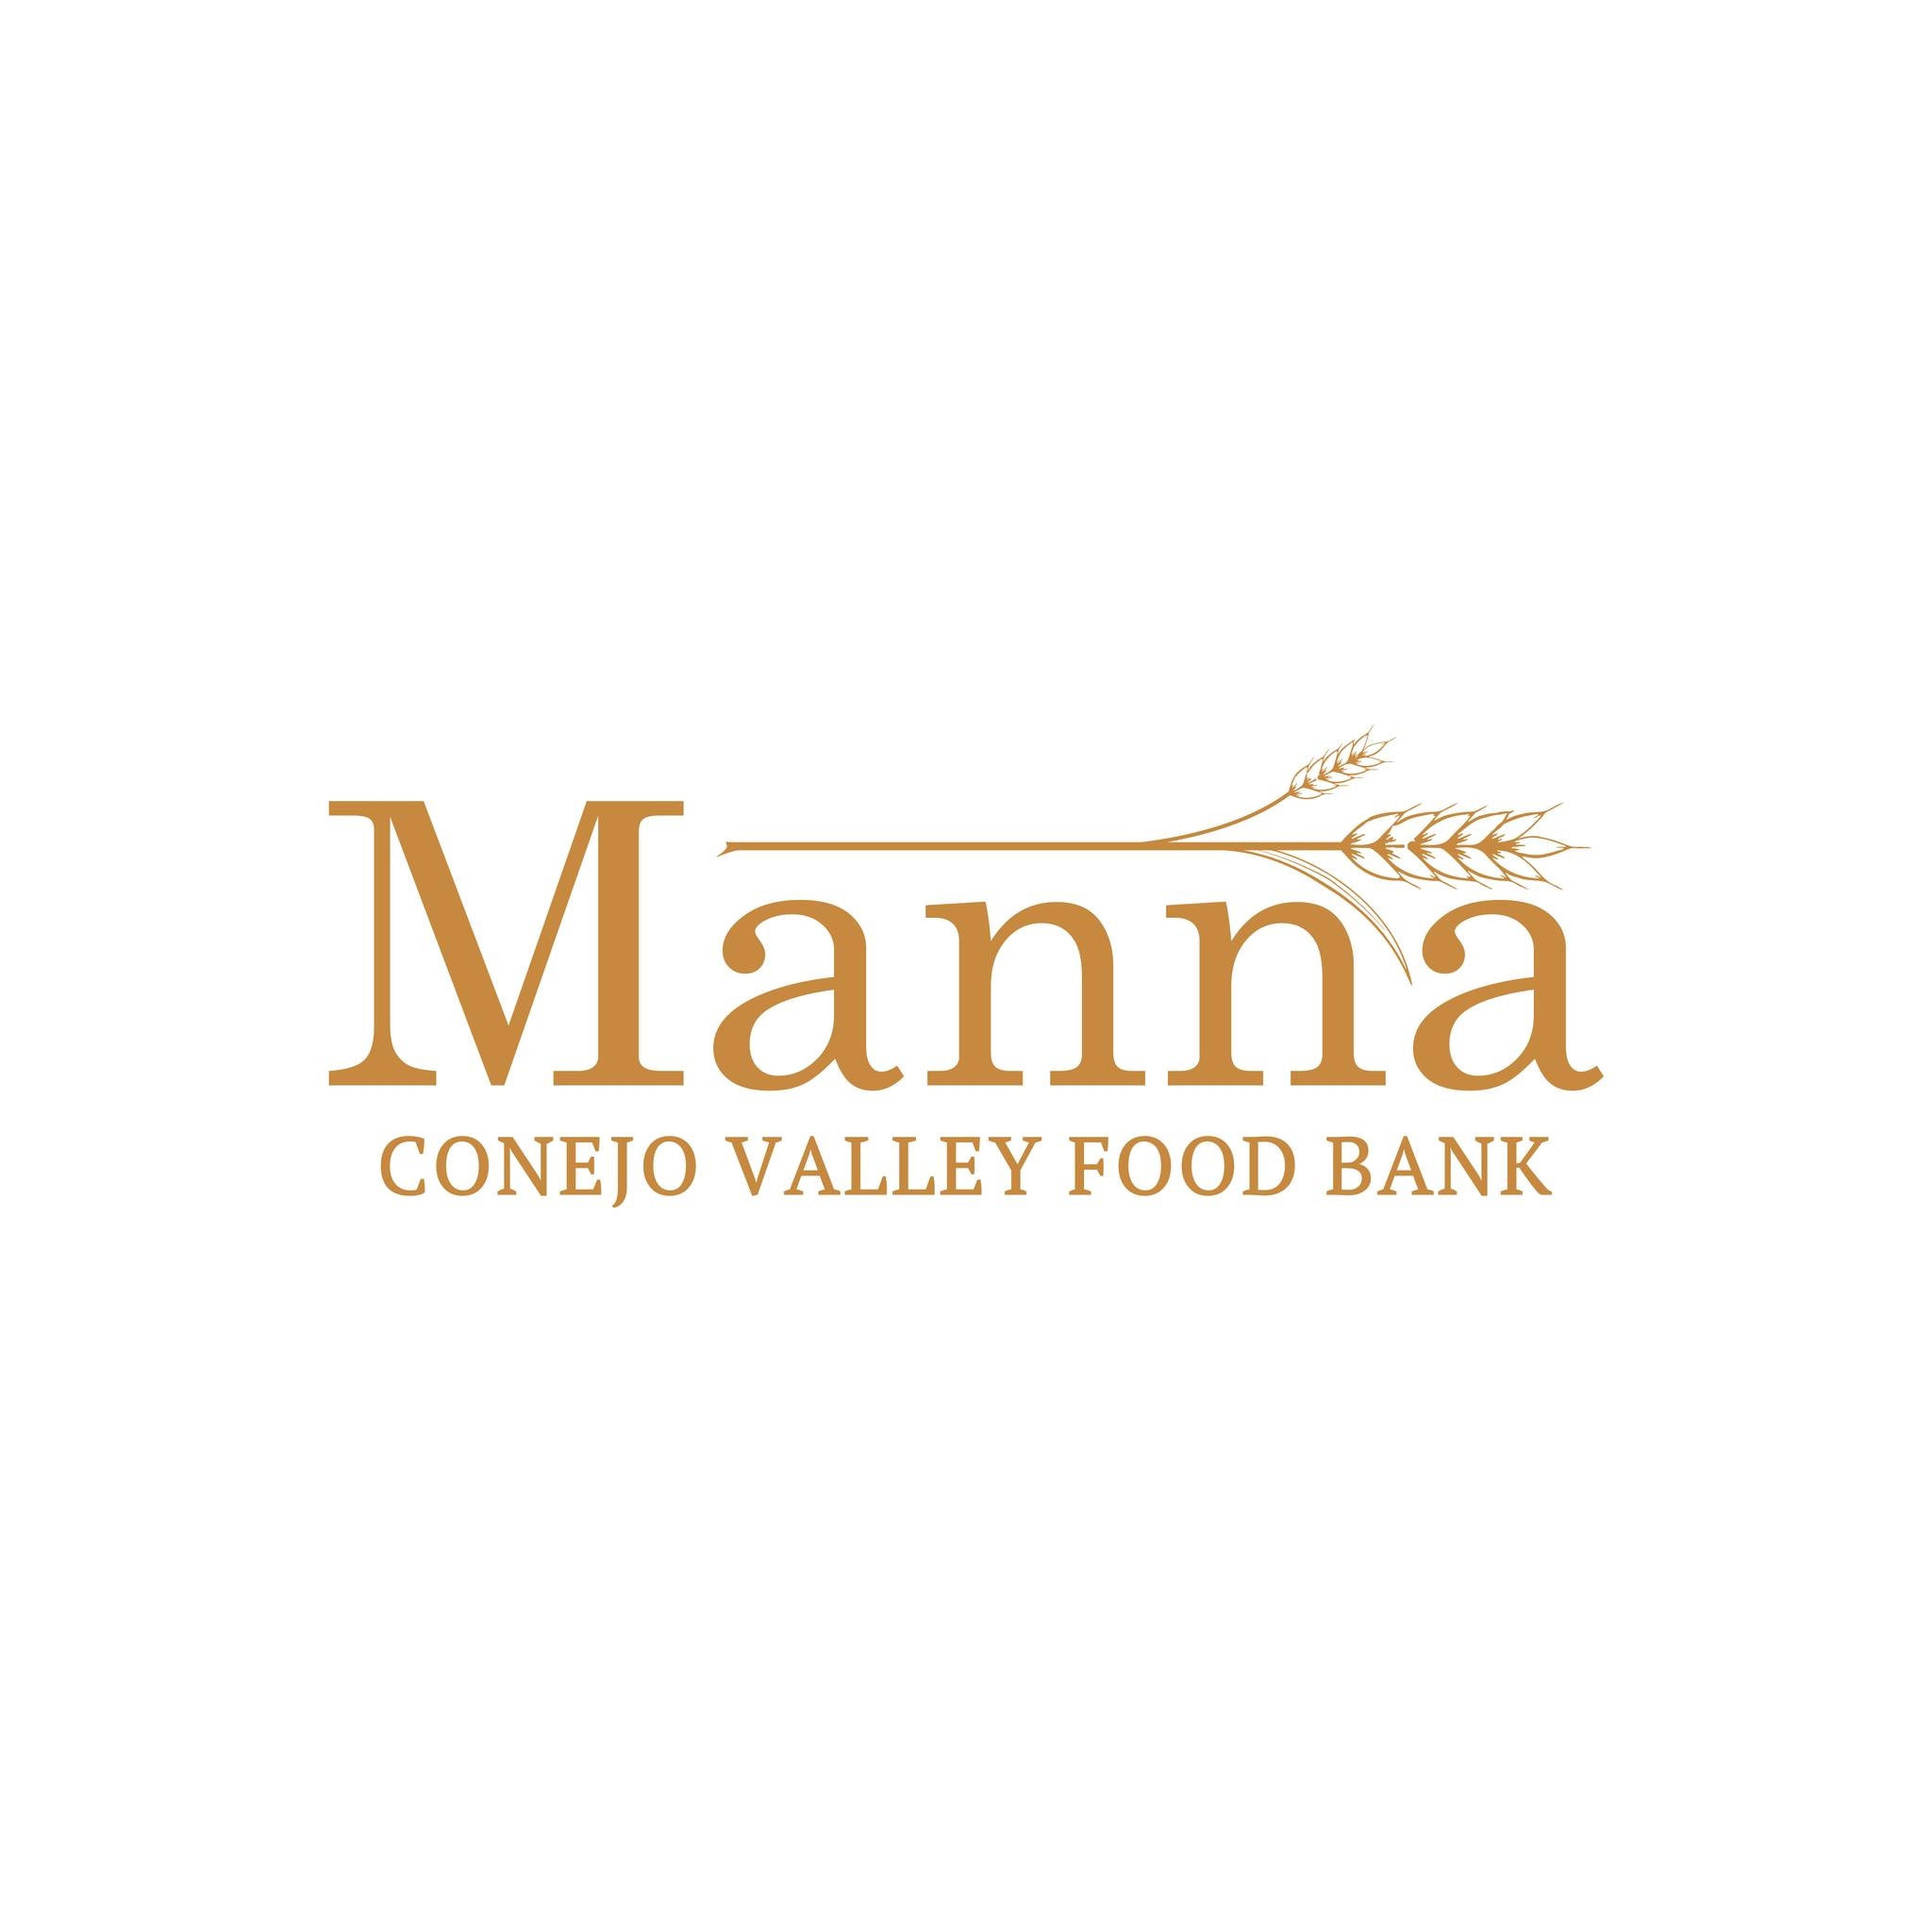 Manna Conejo Valley Food Bank